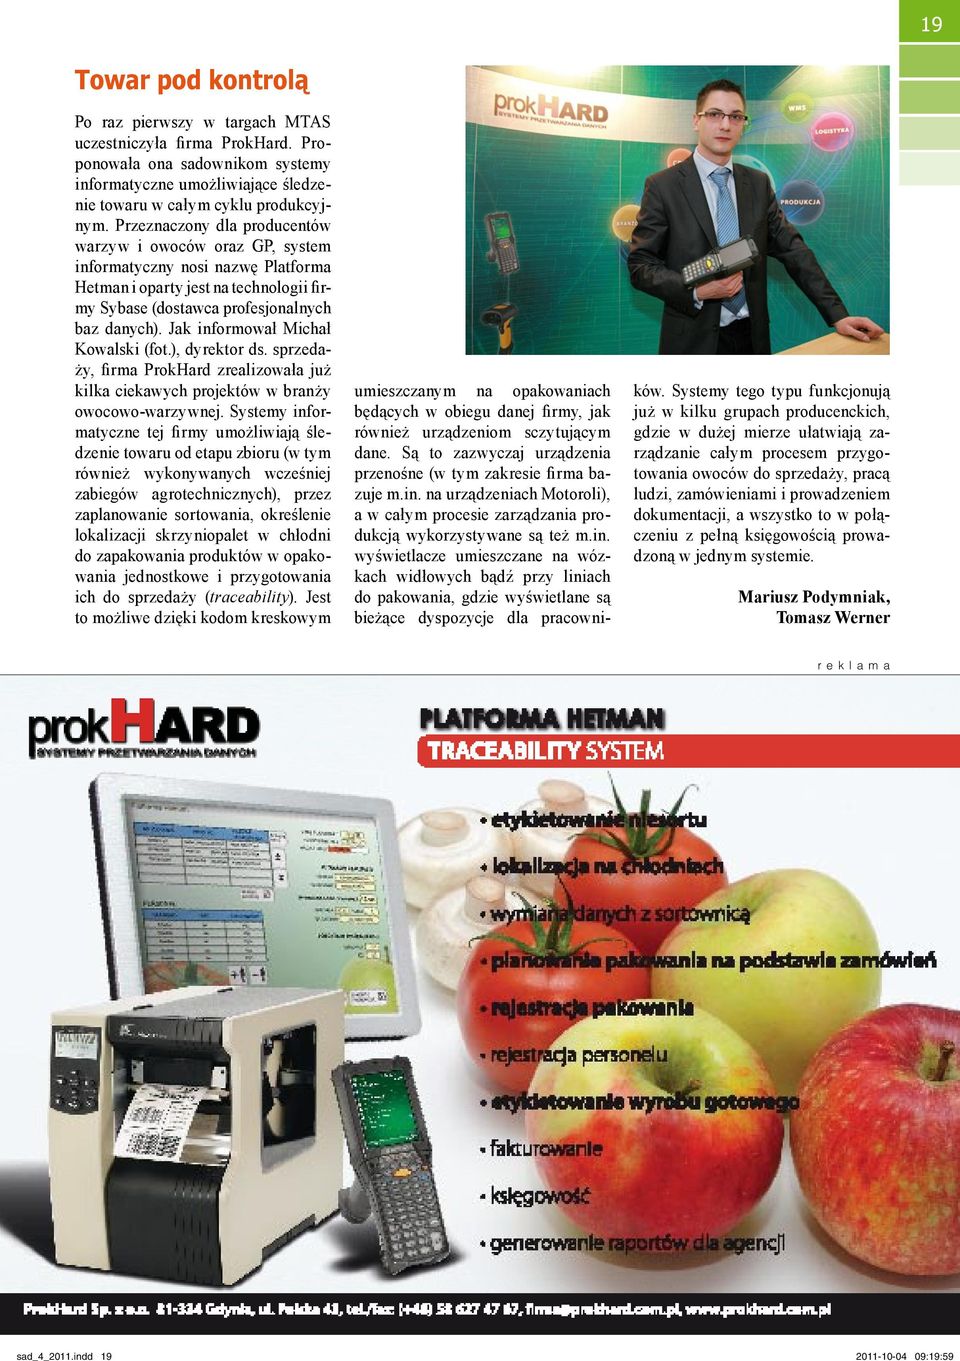 Jak informował Michał Kowalski (fot.), dyrektor ds. sprzedaży, firma ProkHard zrealizowała już kilka ciekawych projektów w branży owocowo-warzywnej.